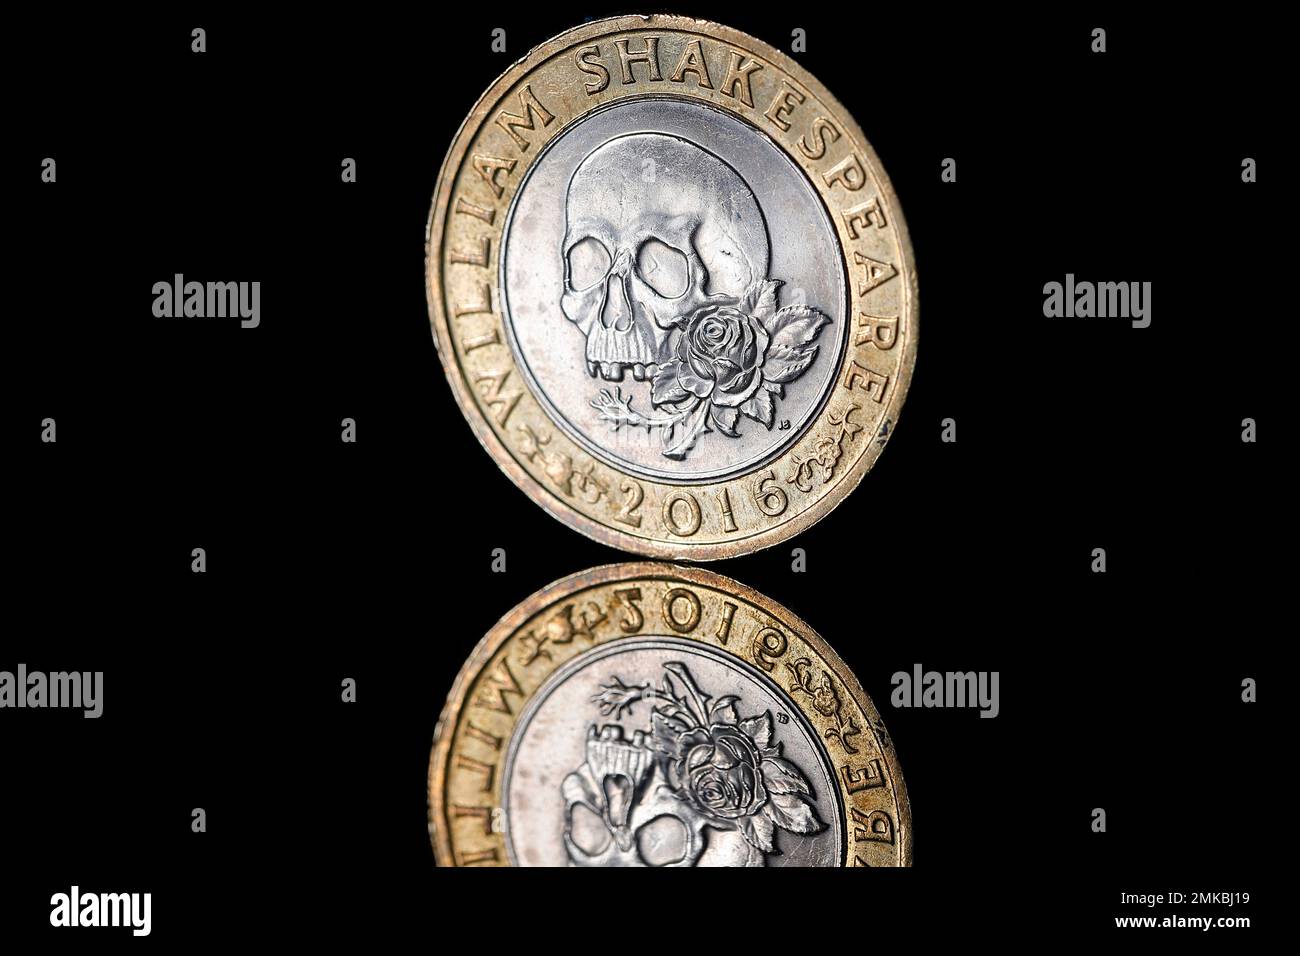 Una moneta britannica del £2 che commemora le tragedie di William Shakespeare emesse dalla Zecca reale nel 2016 Foto Stock